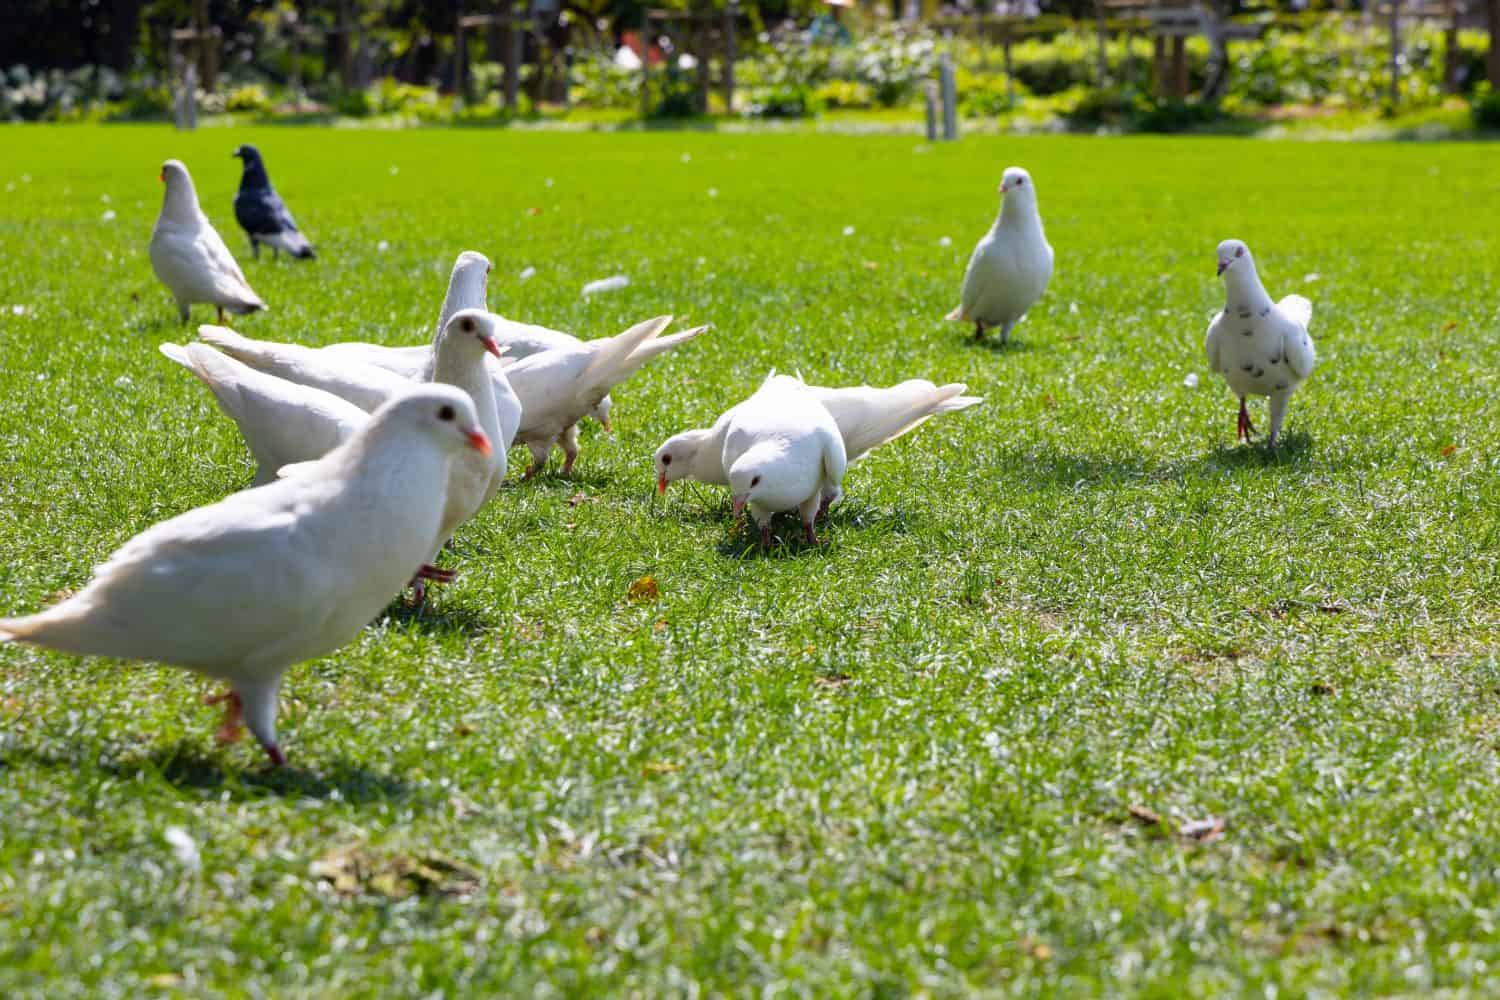 La colomba bianca sul prato del parco, conosciuta anche come colomba della pace